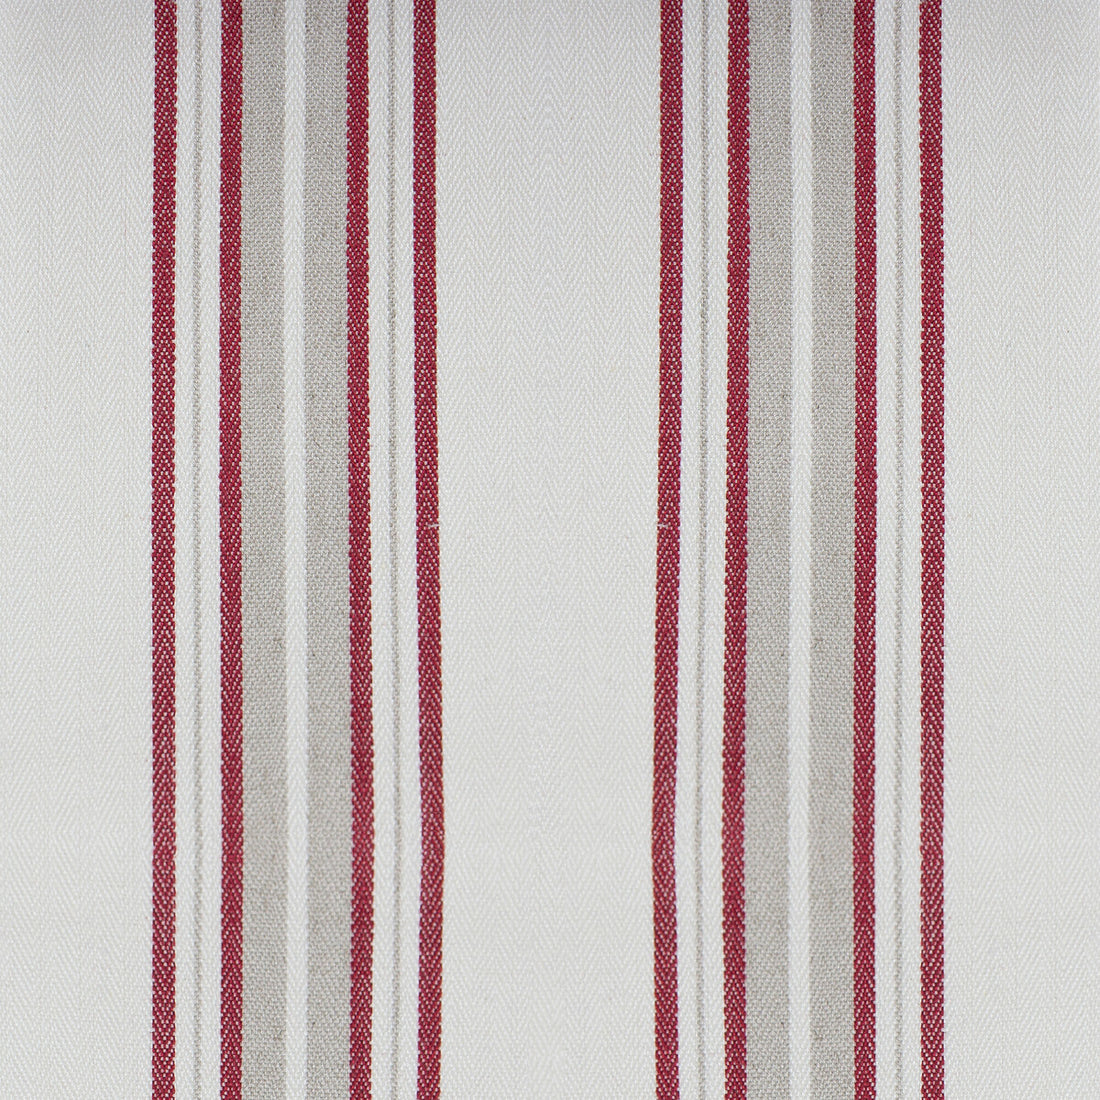 Nueva York fabric in rojo color - pattern GDT5573.003.0 - by Gaston y Daniela in the Gaston Luis Bustamante collection